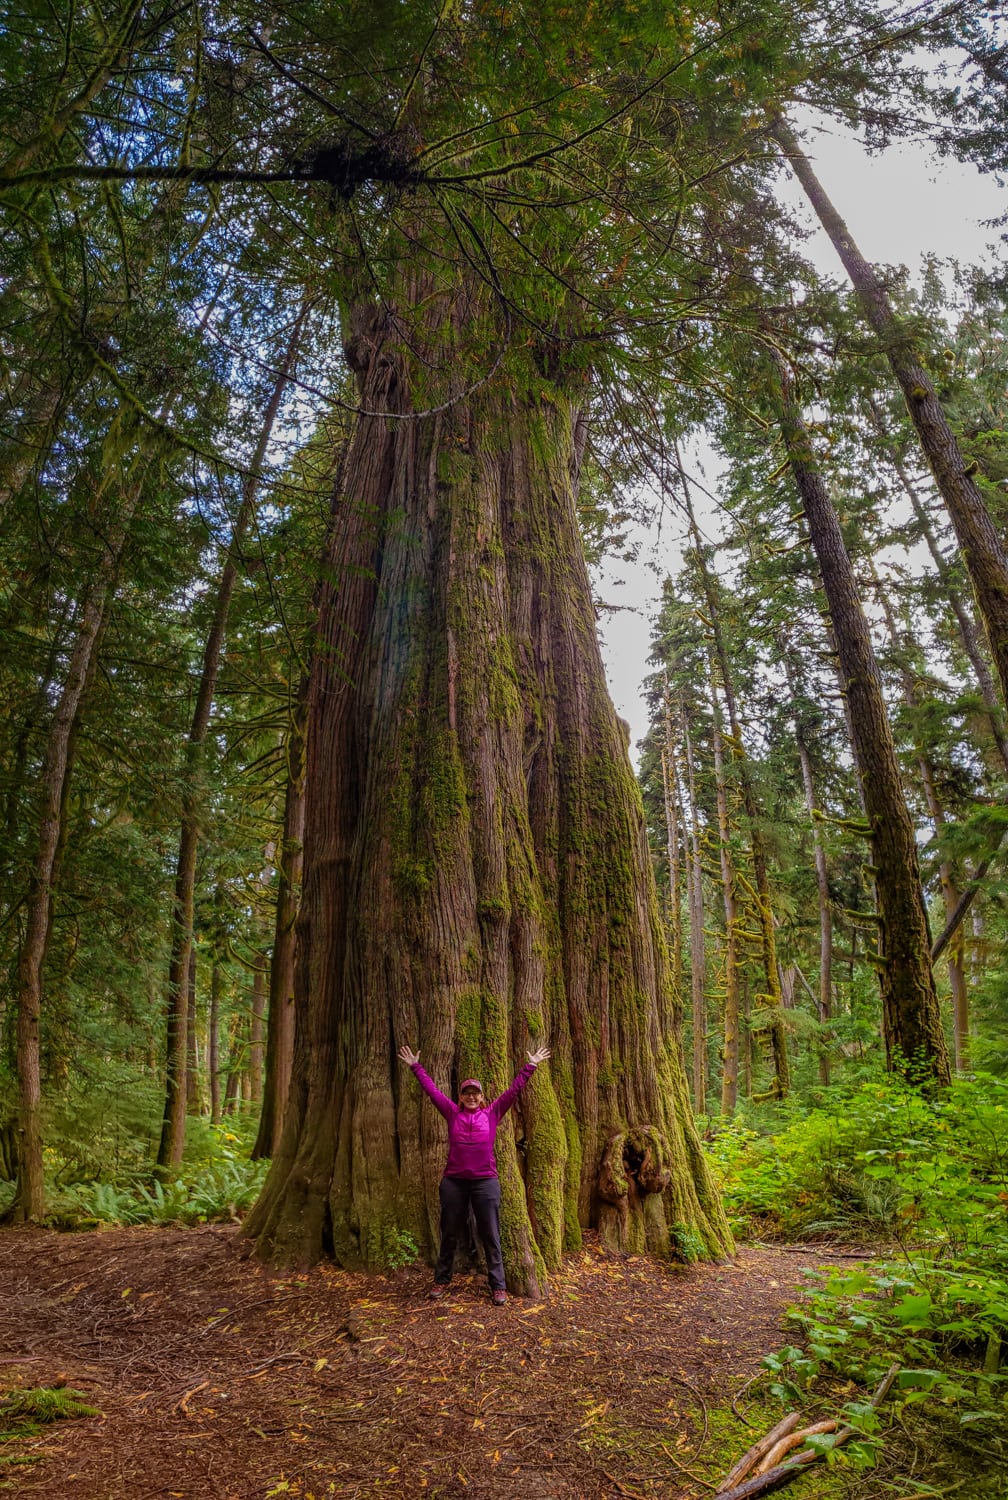 big cedar tree